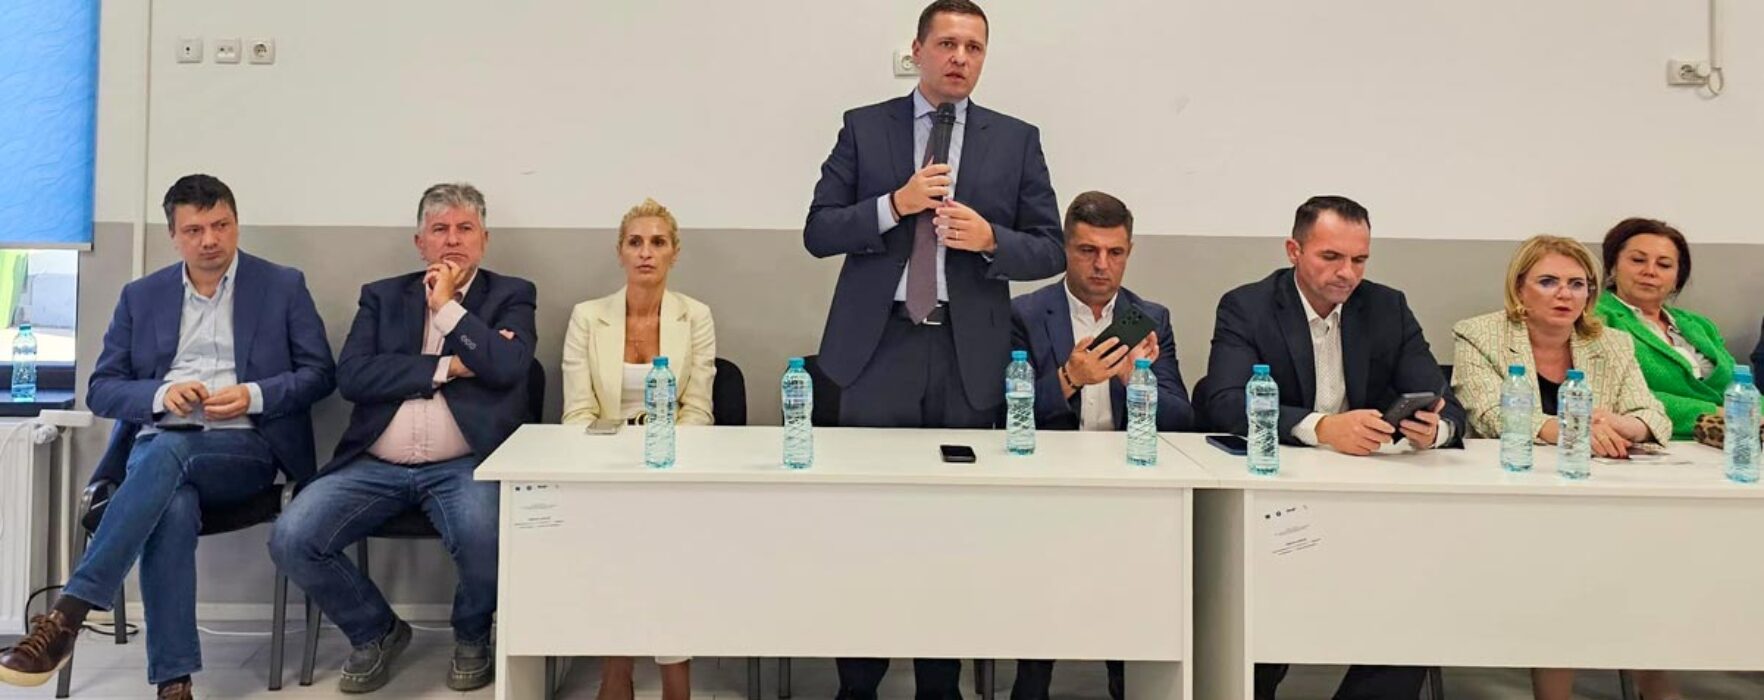 PSD Dâmboviţa: Anul viitor, în judeţ, PSD va câştiga toate alegerile